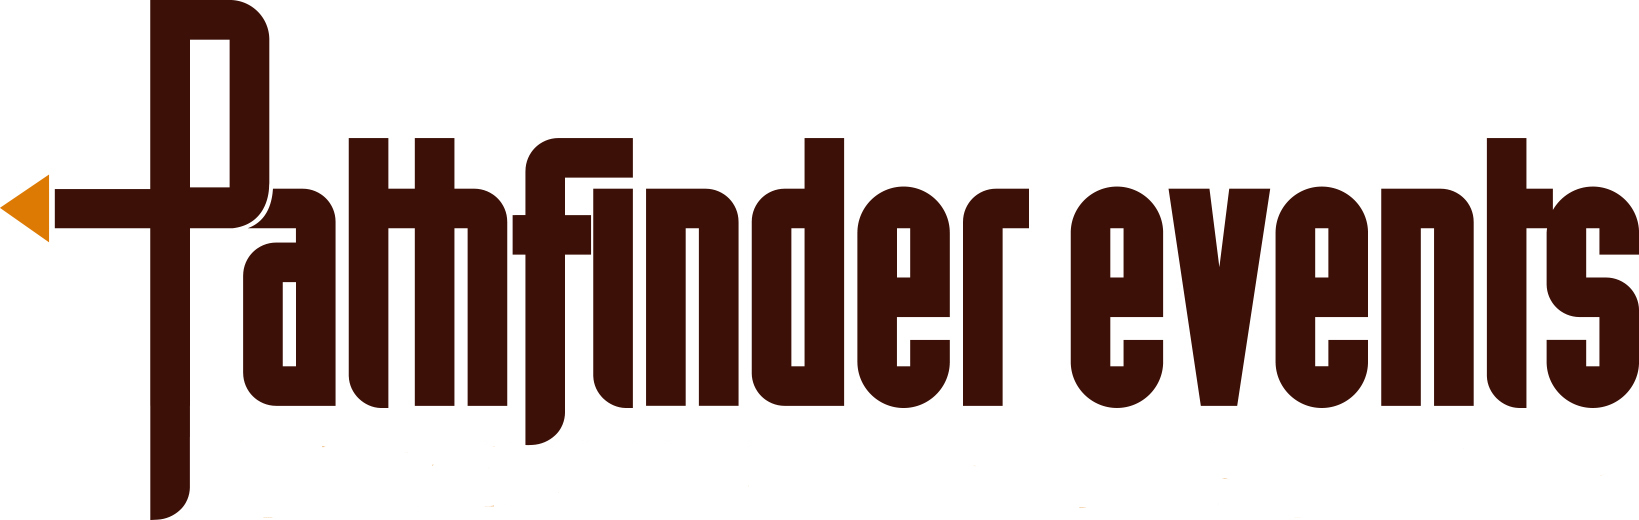 pathfinder logo ohne untertitel